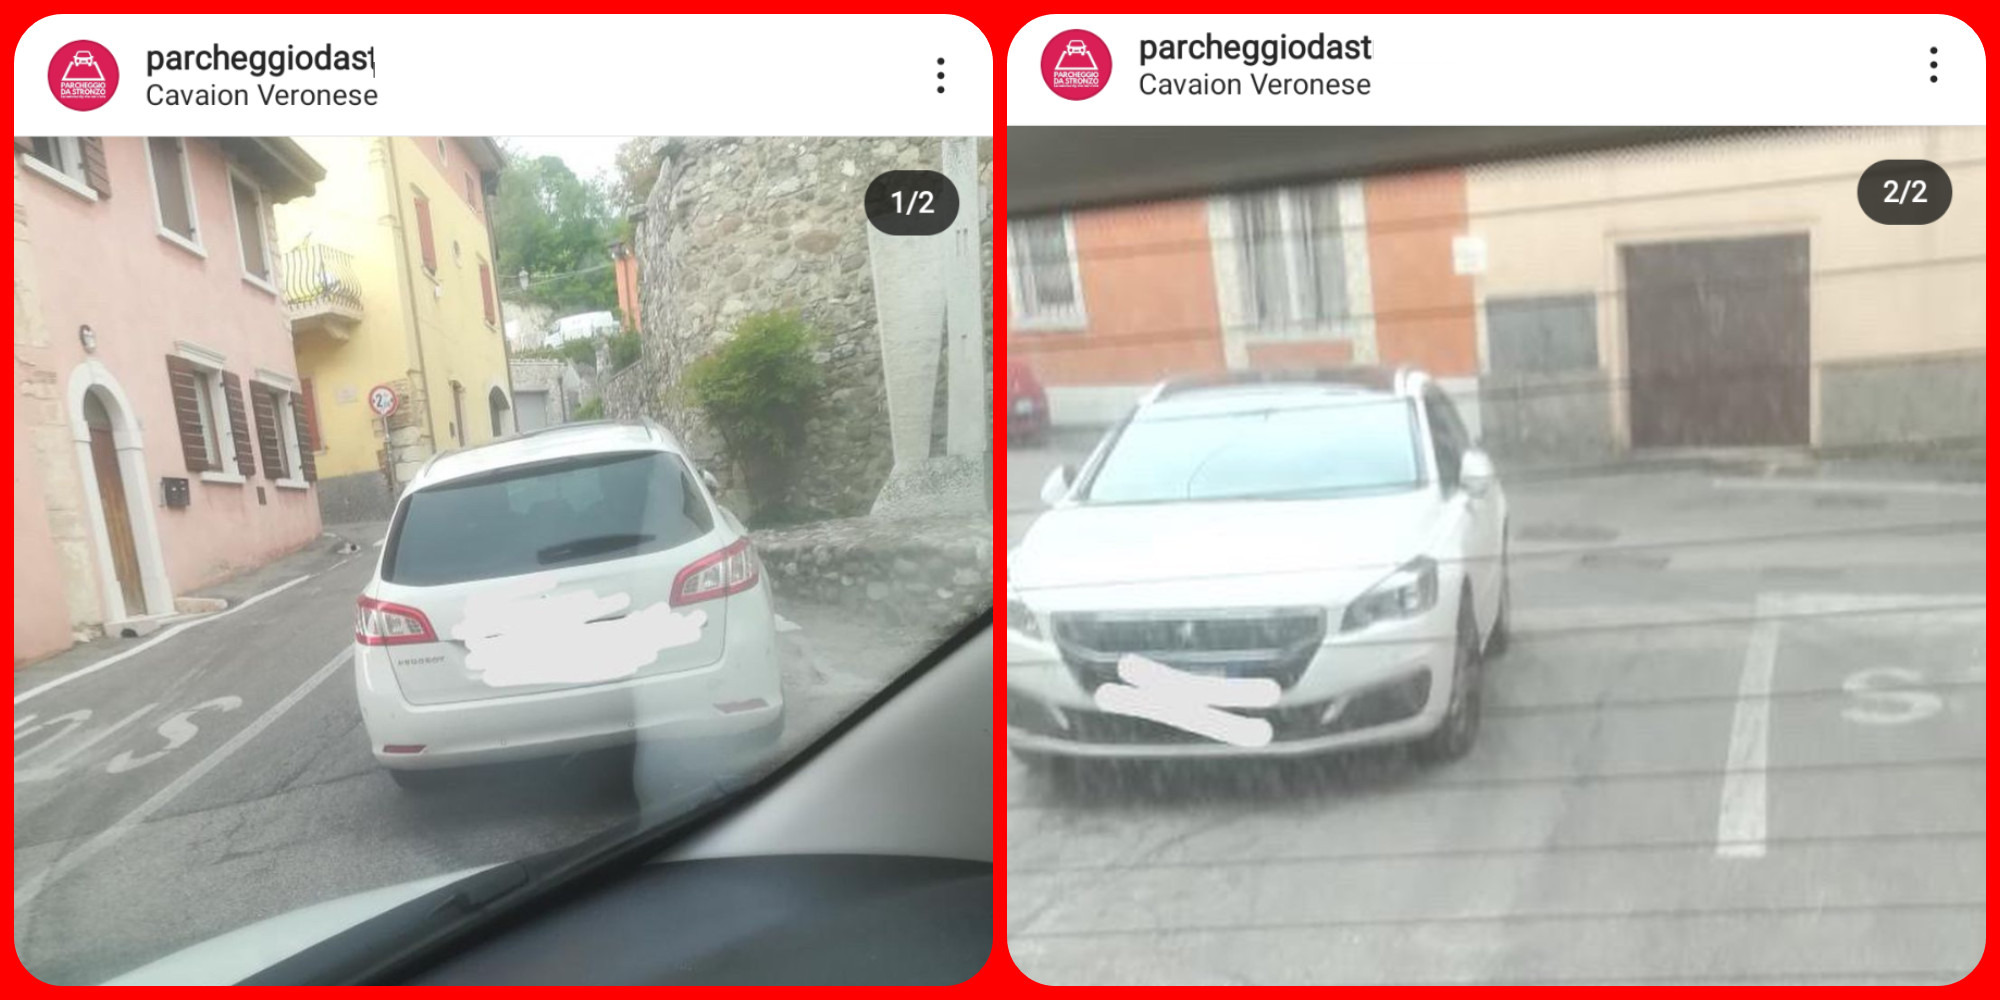 Dalla provincia di Verona, un parcheggio da ritiro della patente. Fonte: parcheggiodastr - Instagram